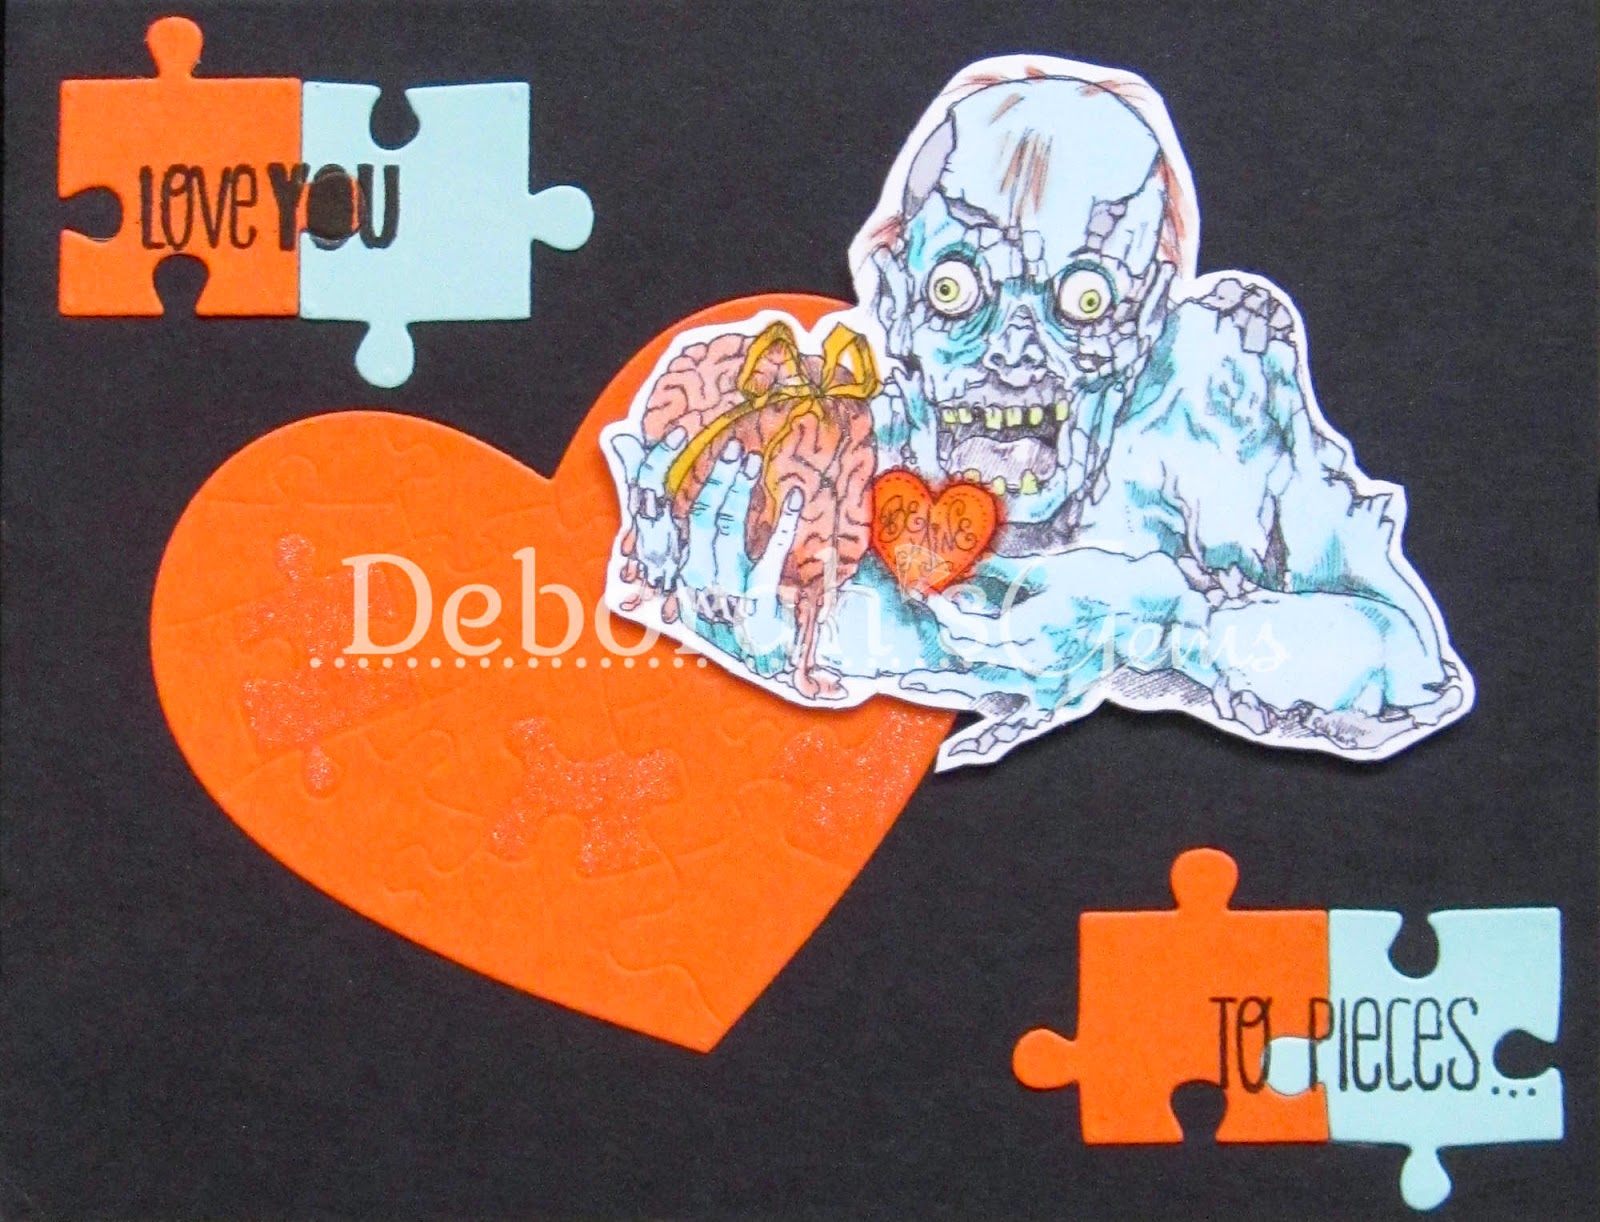 Love You to Pieces - photo by Deborah Frings - Deborah's Gems